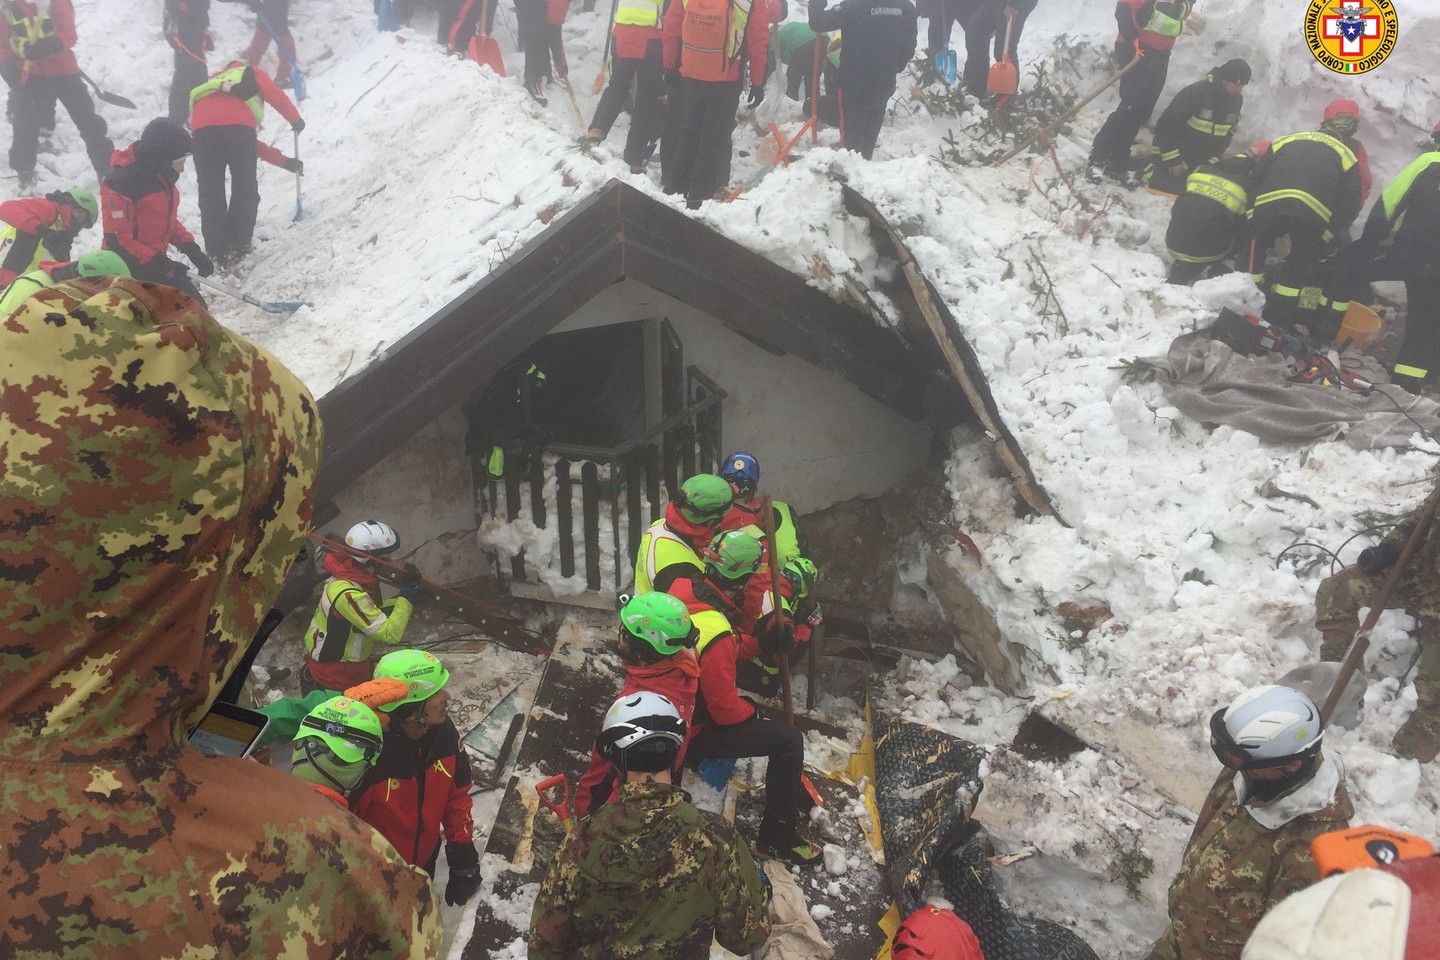  Praėjus kelioms dienoms po tos nelaimės iš po sniego ir griuvėsių buvo ištraukti keturi gyvi vaikai ir penki suaugusieji.<br> AFP/Scanpix nuotr.